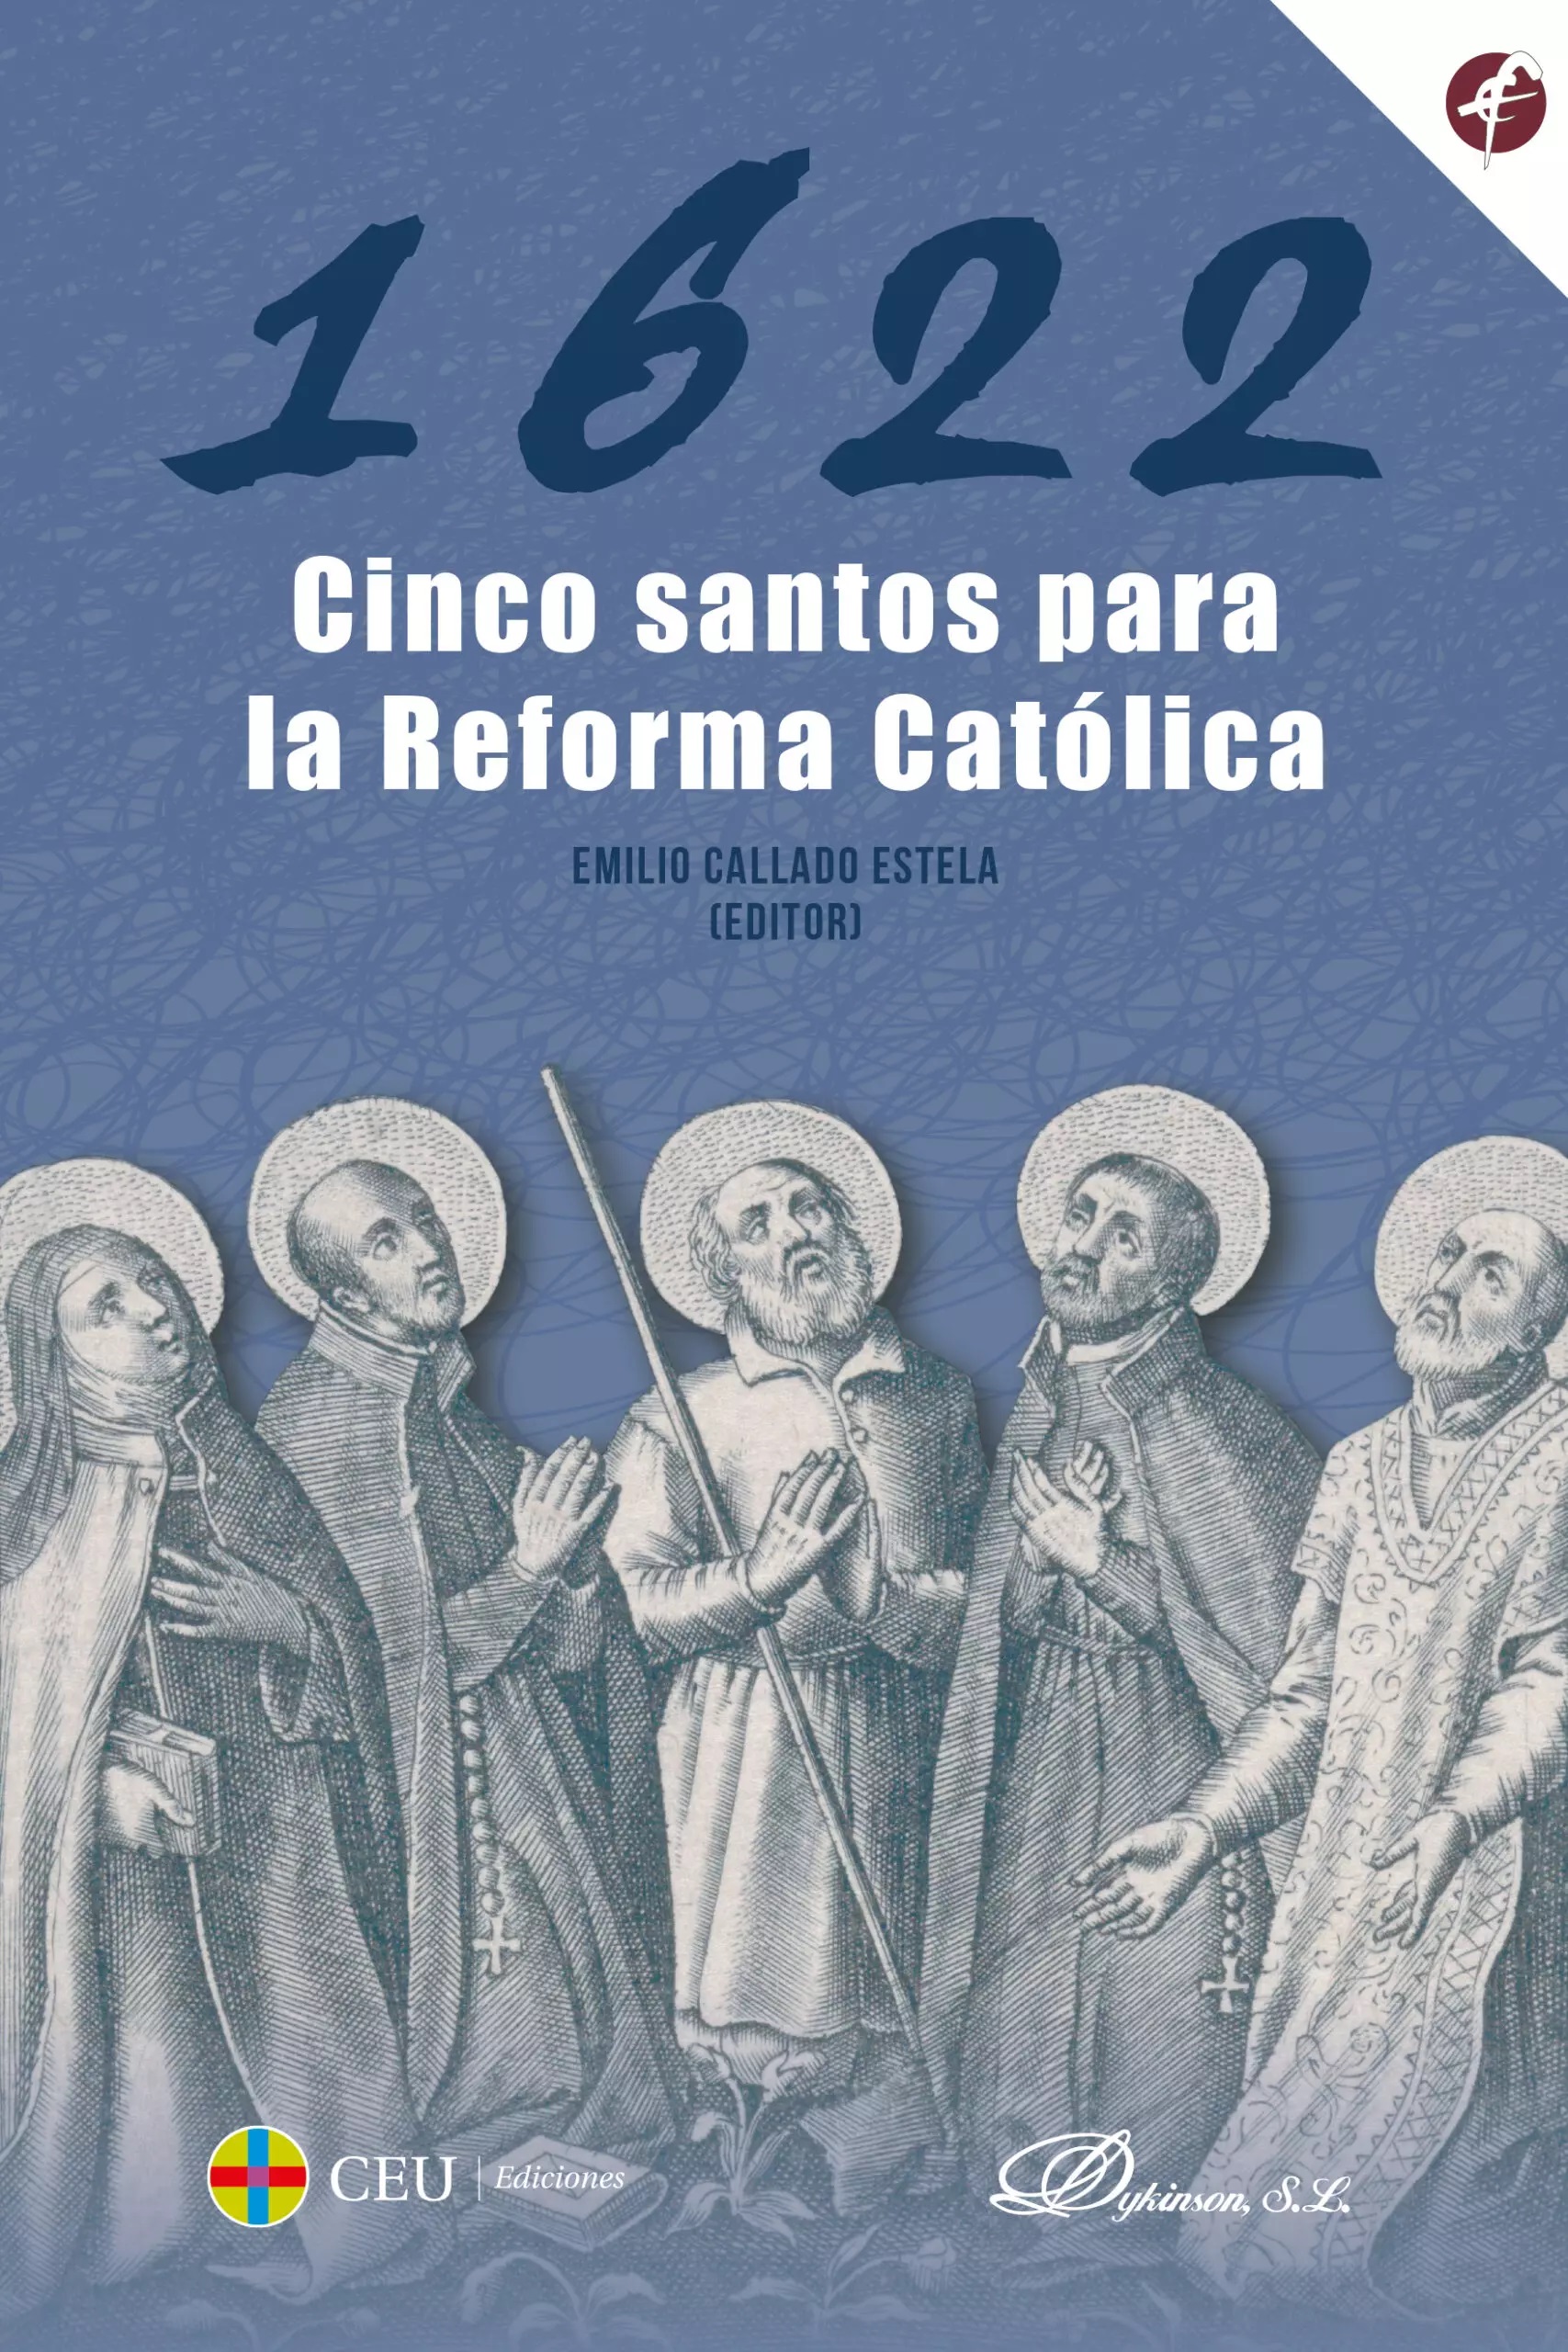 Imagen de portada del libro 1622. Cinco santos para la Reforma católica